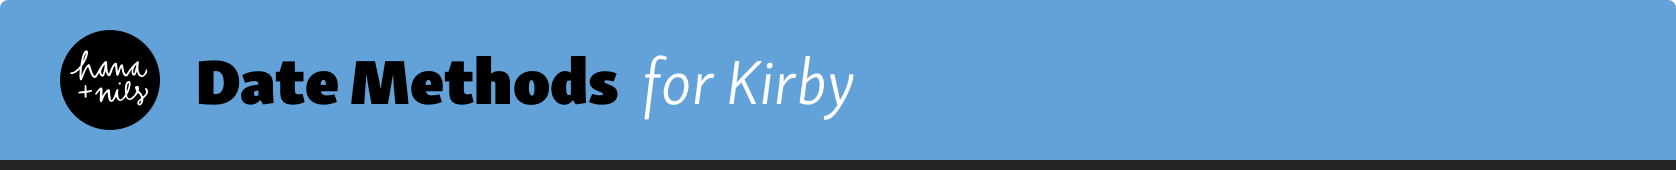 Kirby Date Methods